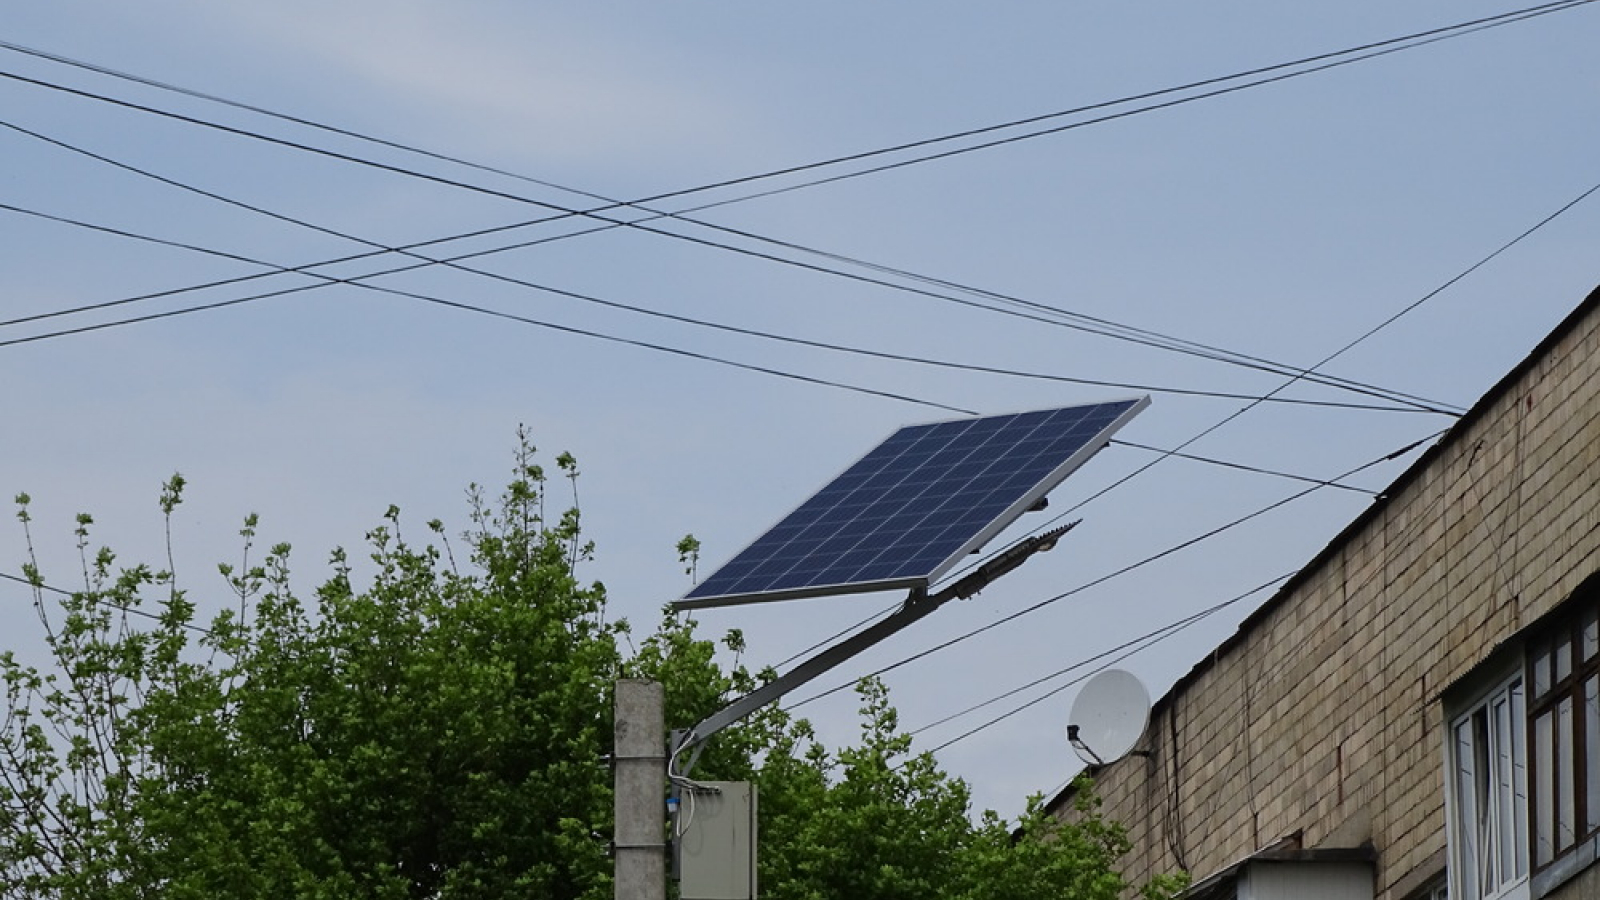 Ukraine: Solar-powered street lighting to arrive in Chernivtsi thanks to EU support 